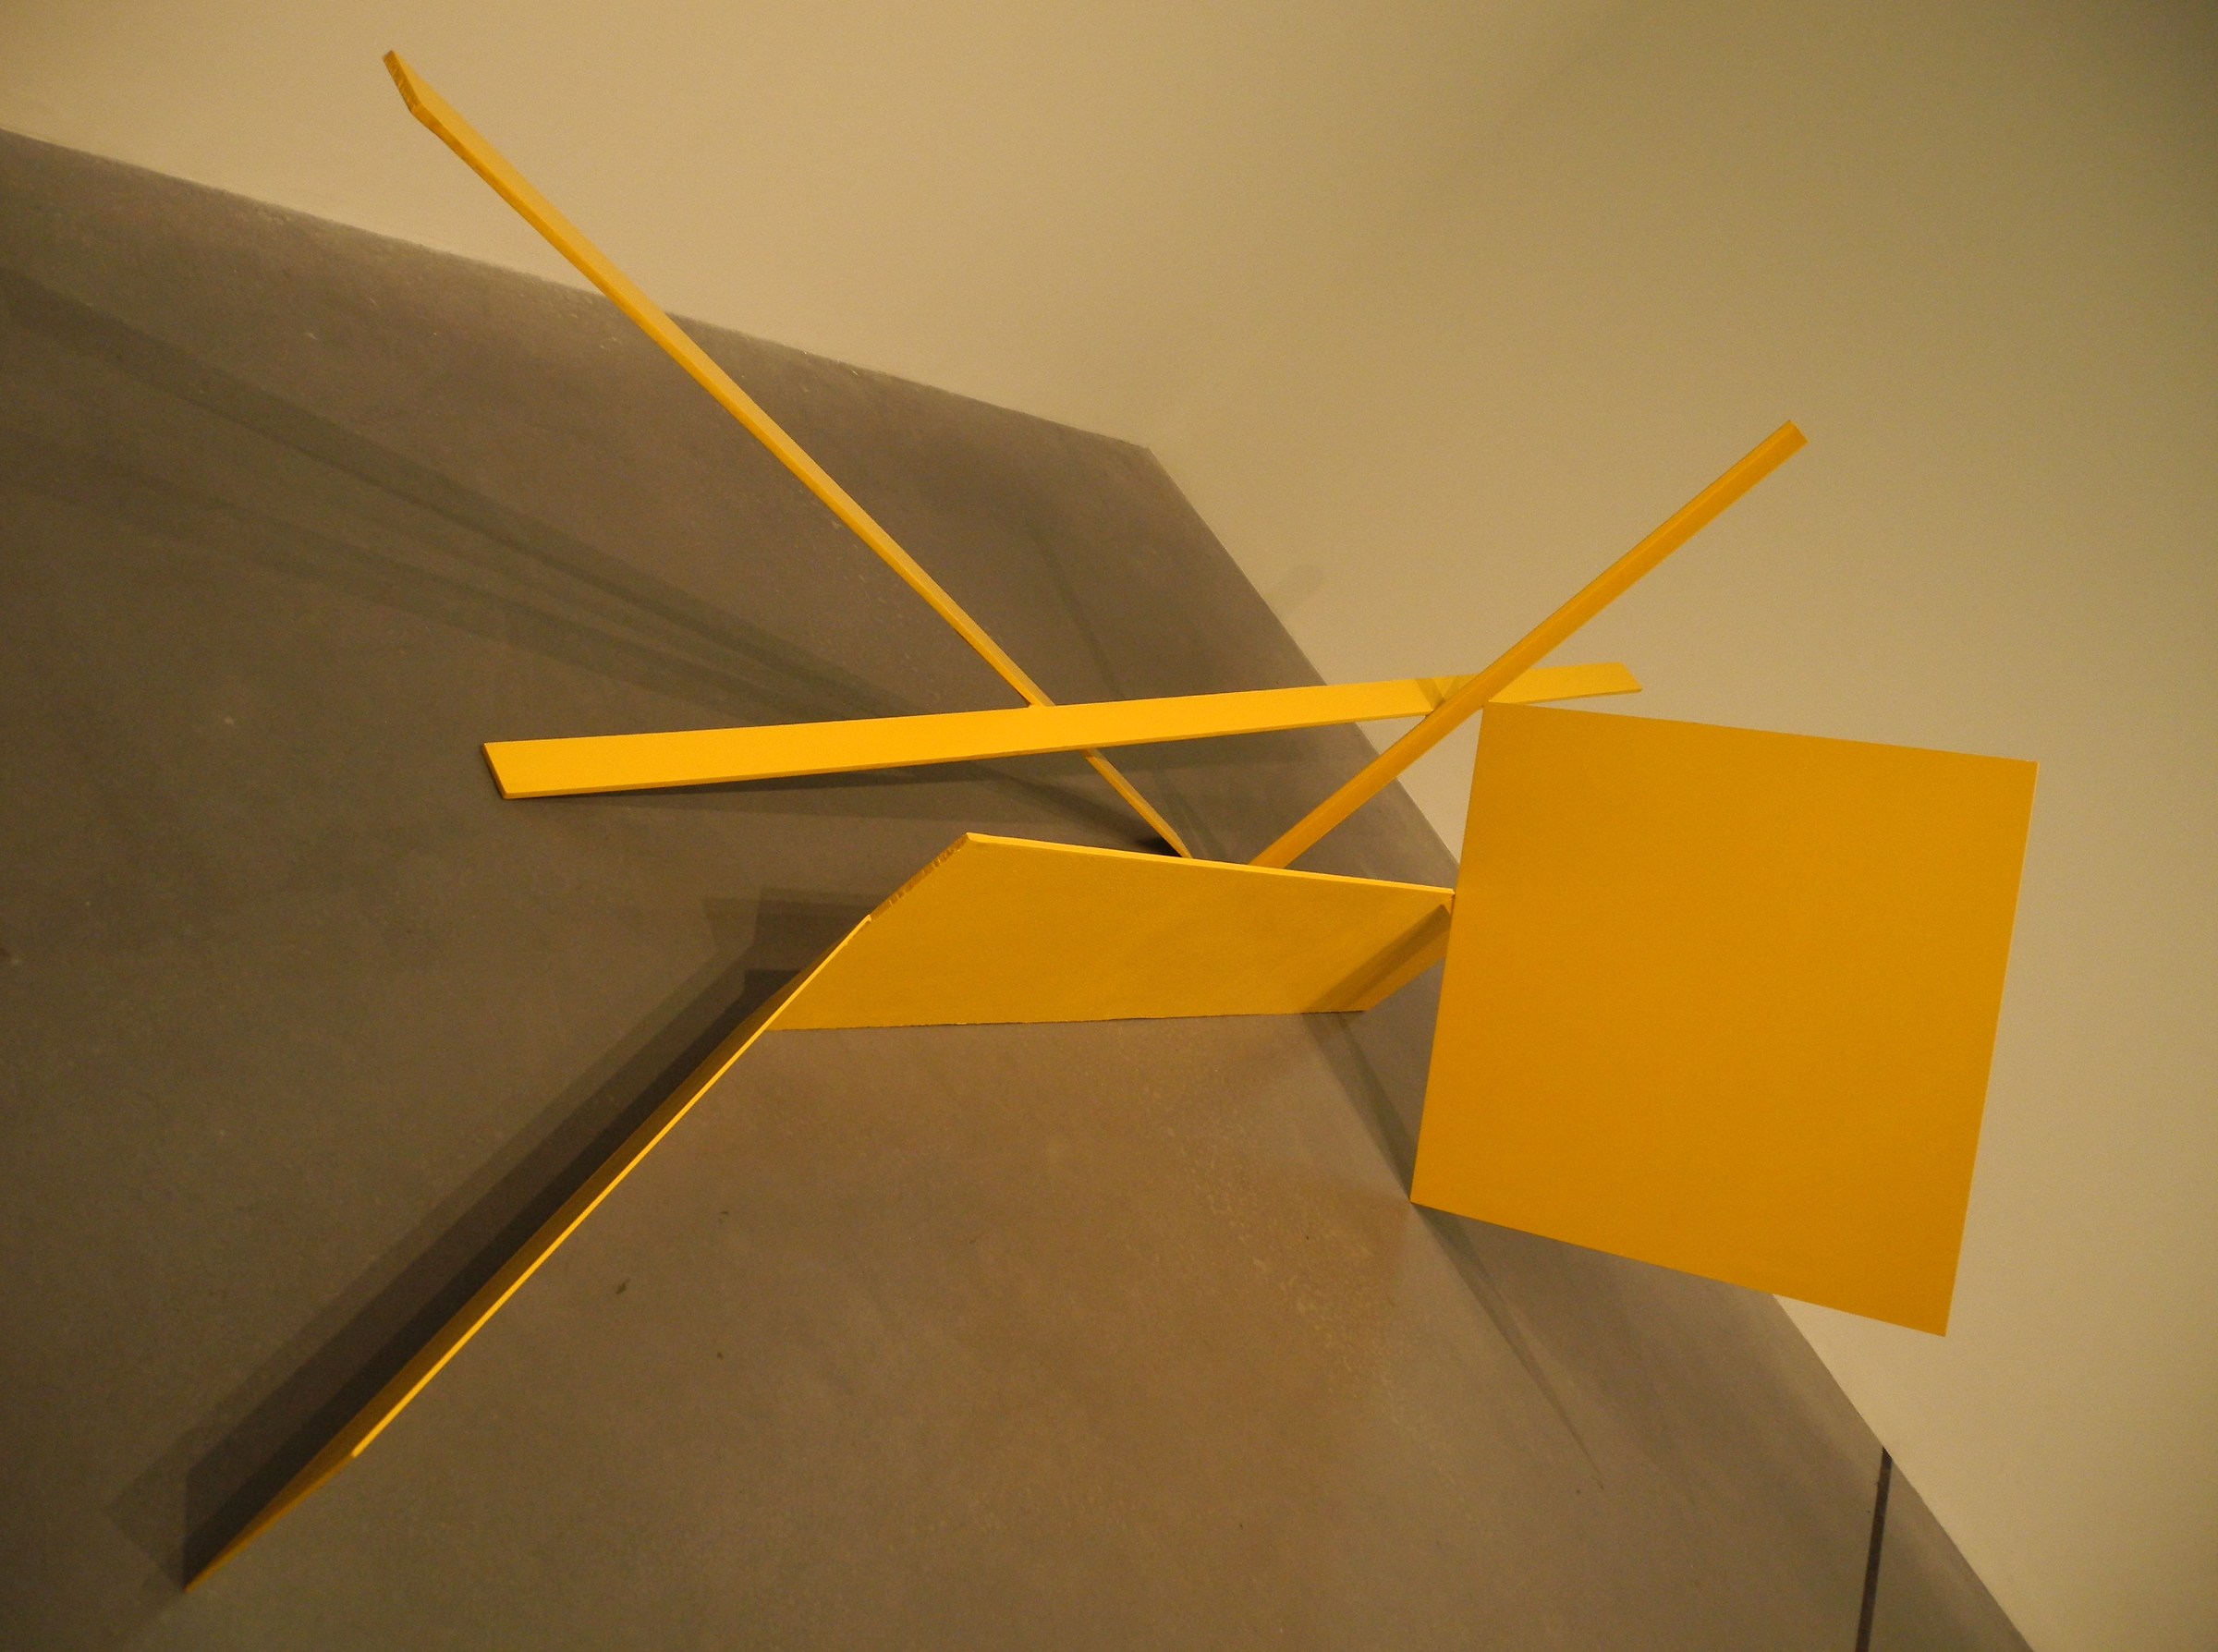 Scultura in metallo tinto di giallo; Tate Modern...